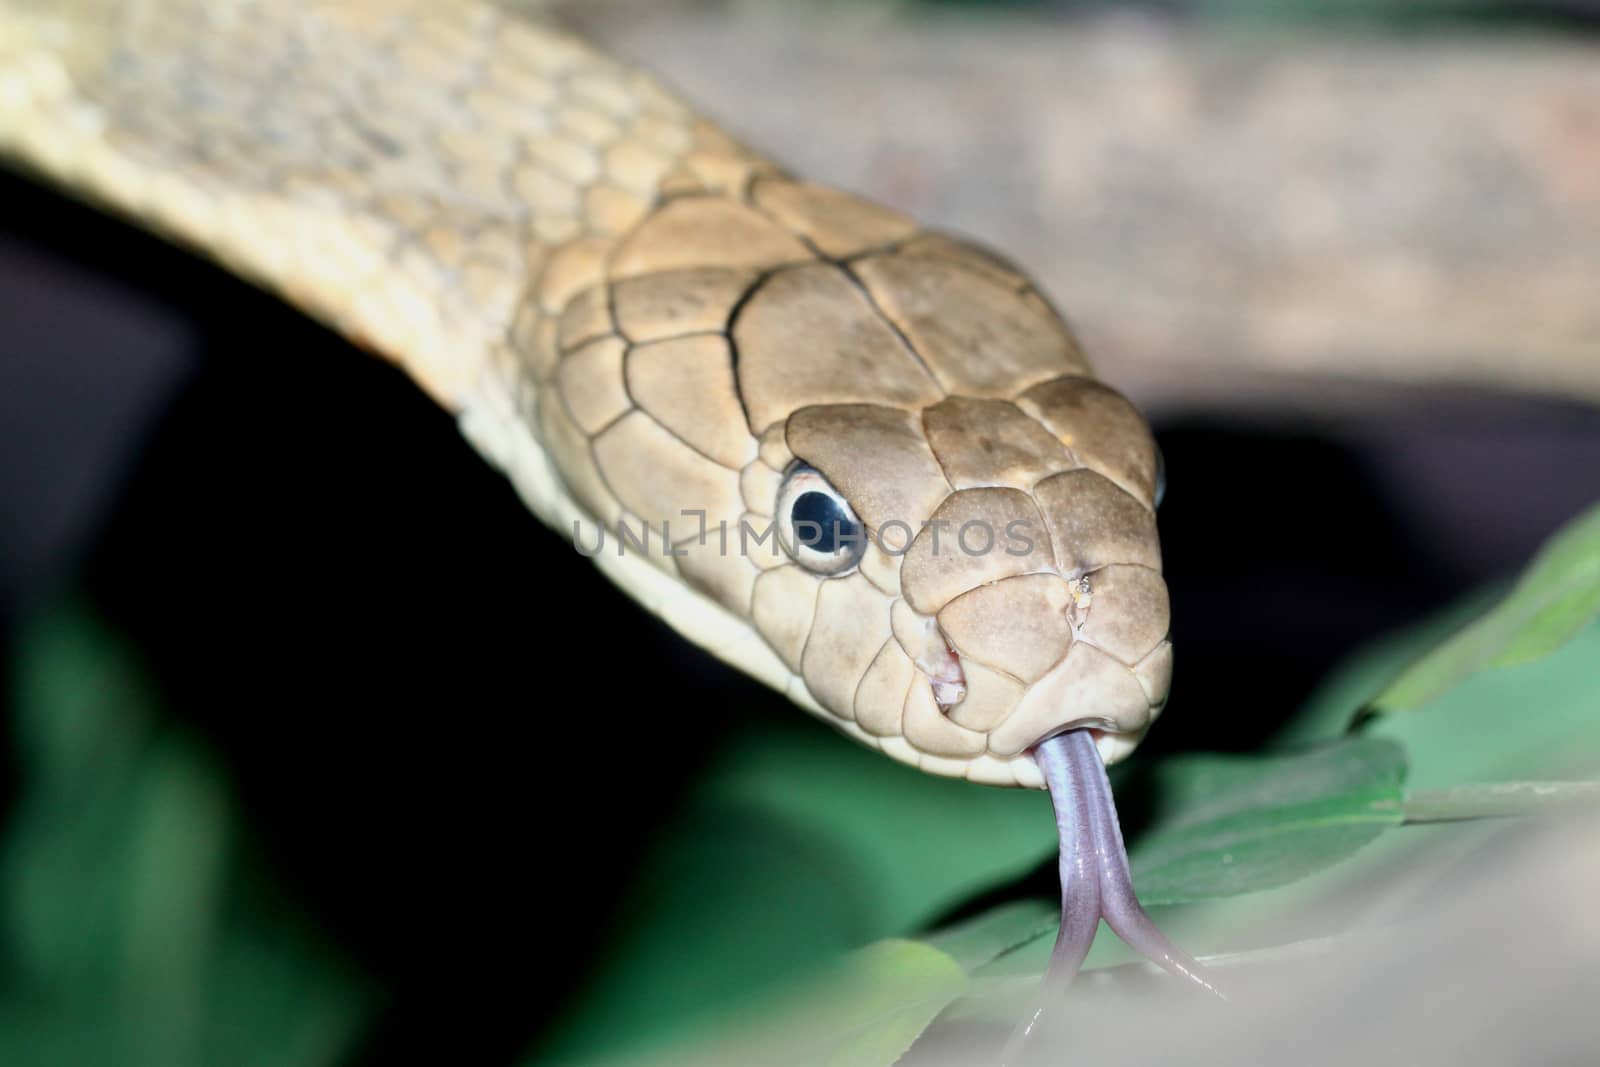 close up king croba snake